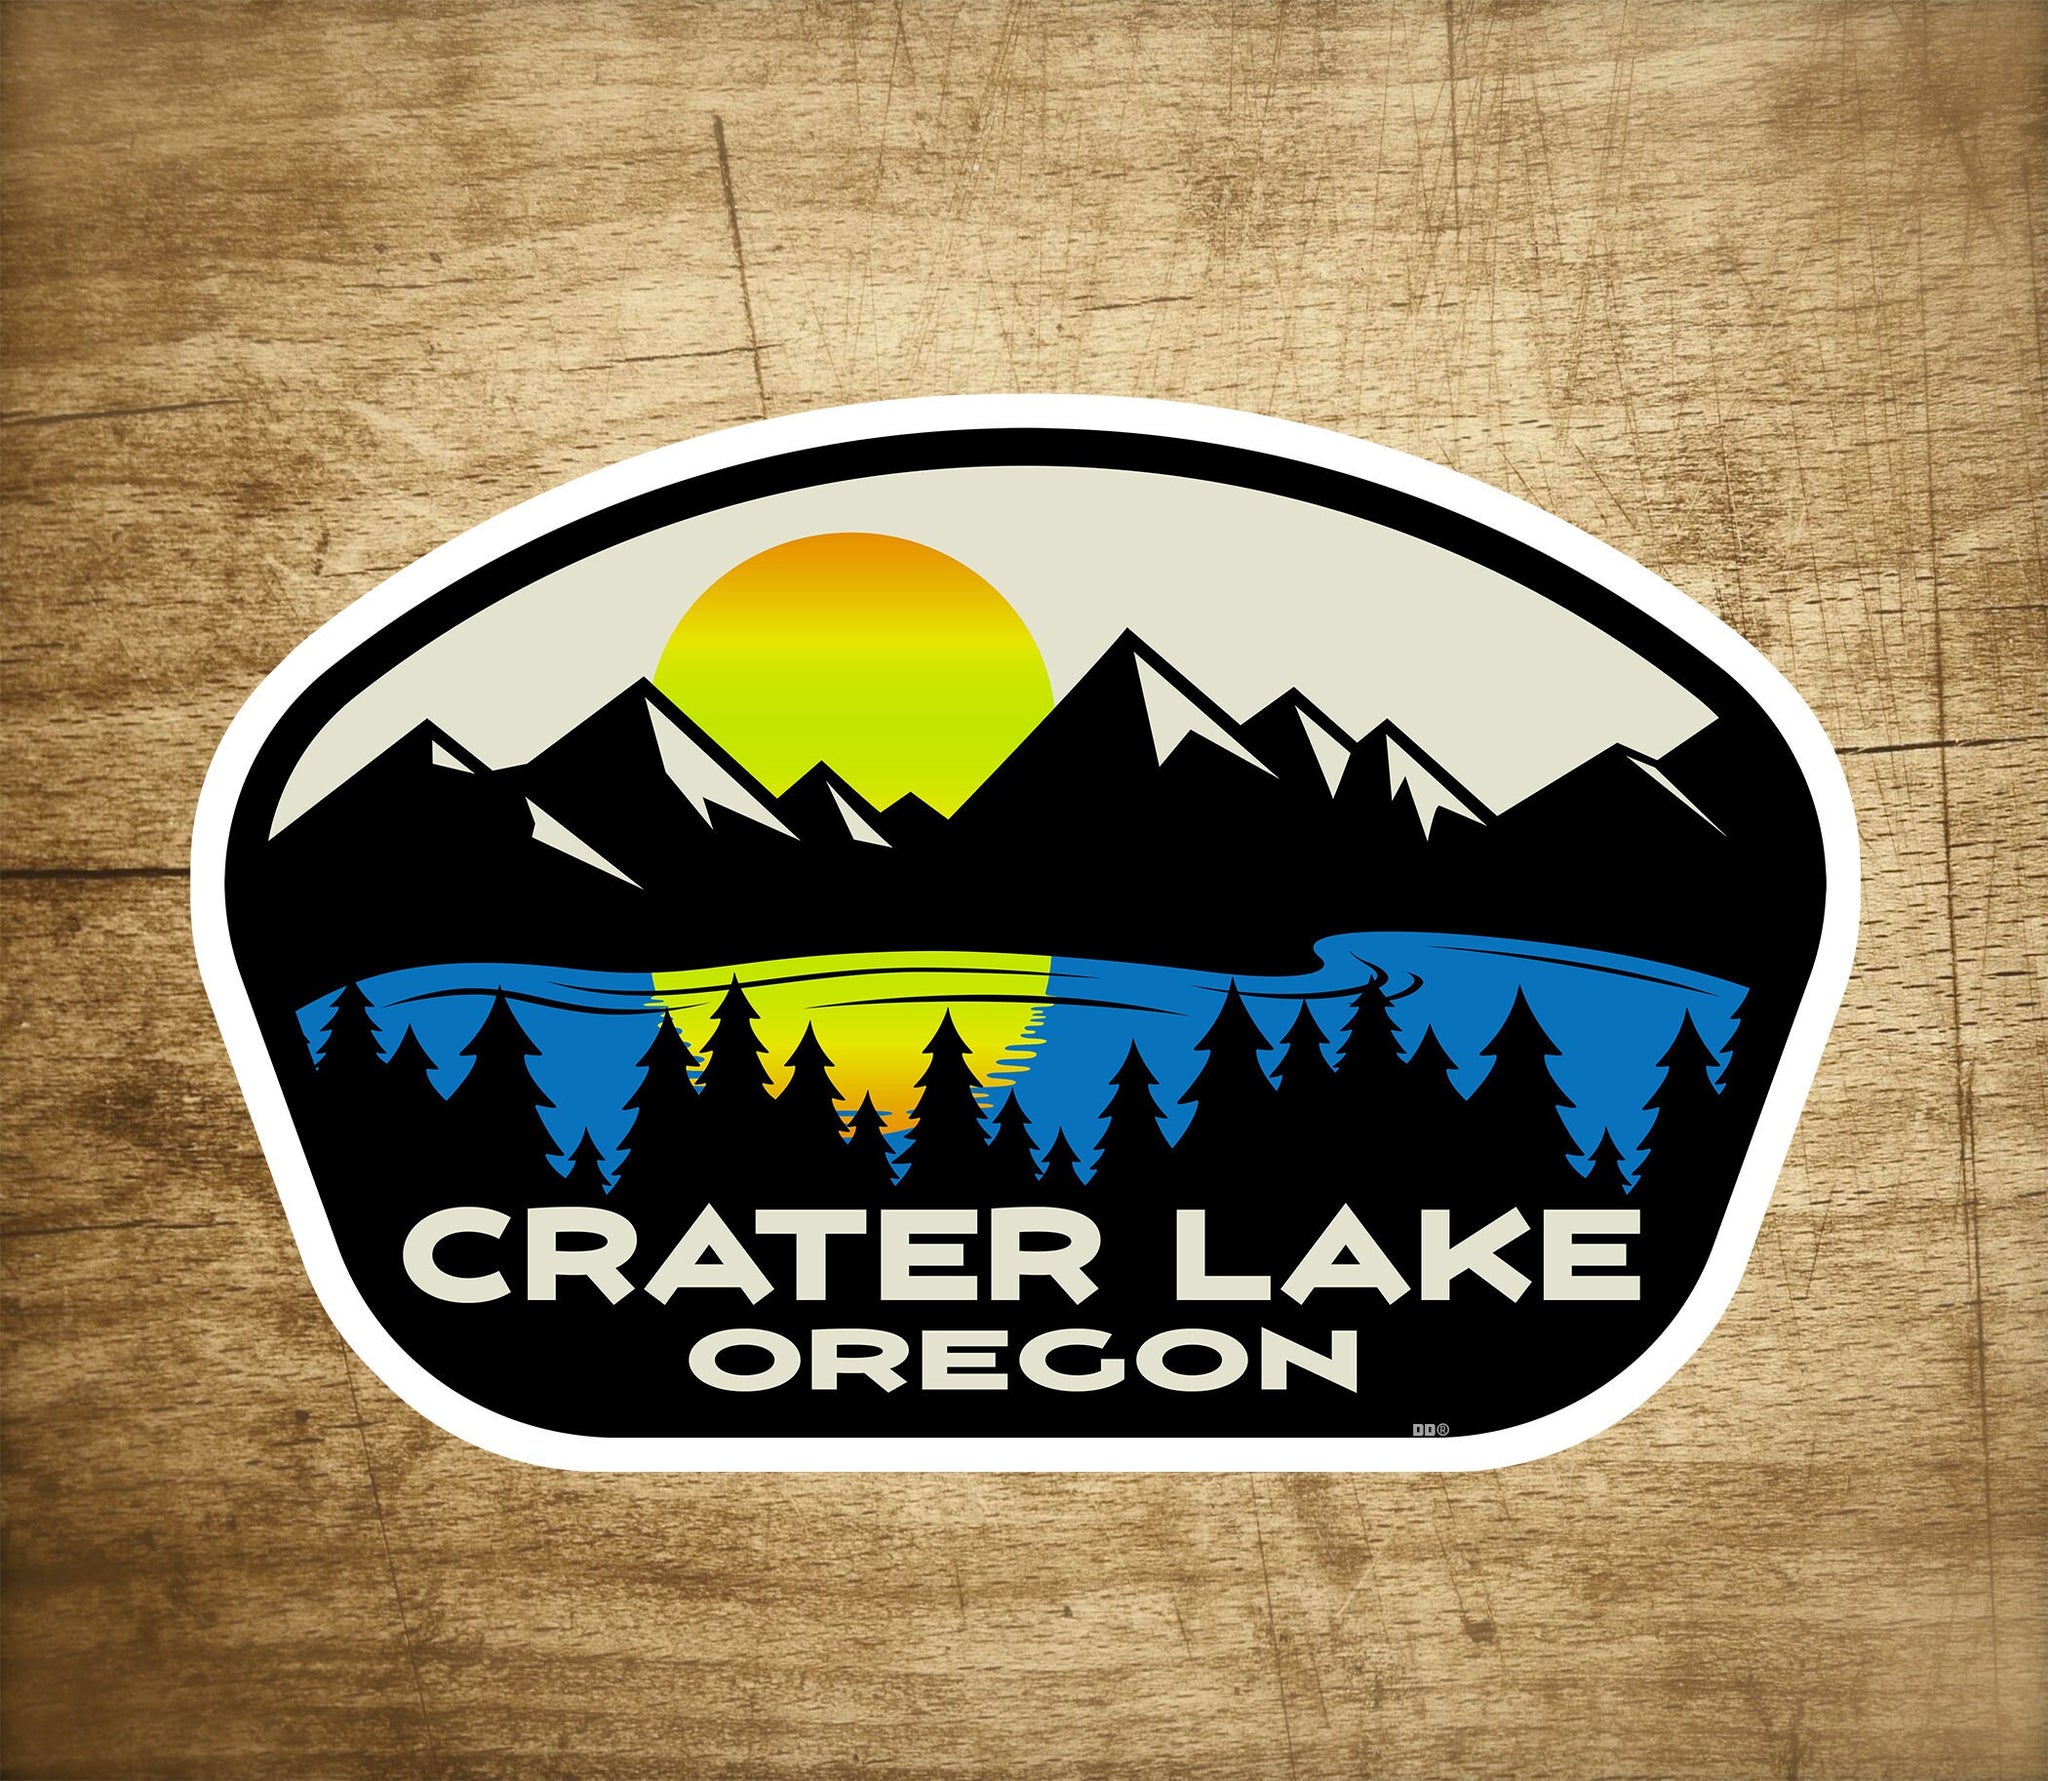 Crater Lake National Park Oregon Sticker Decal 3.75" x 2.5" Vinyl Indoor Outdoor